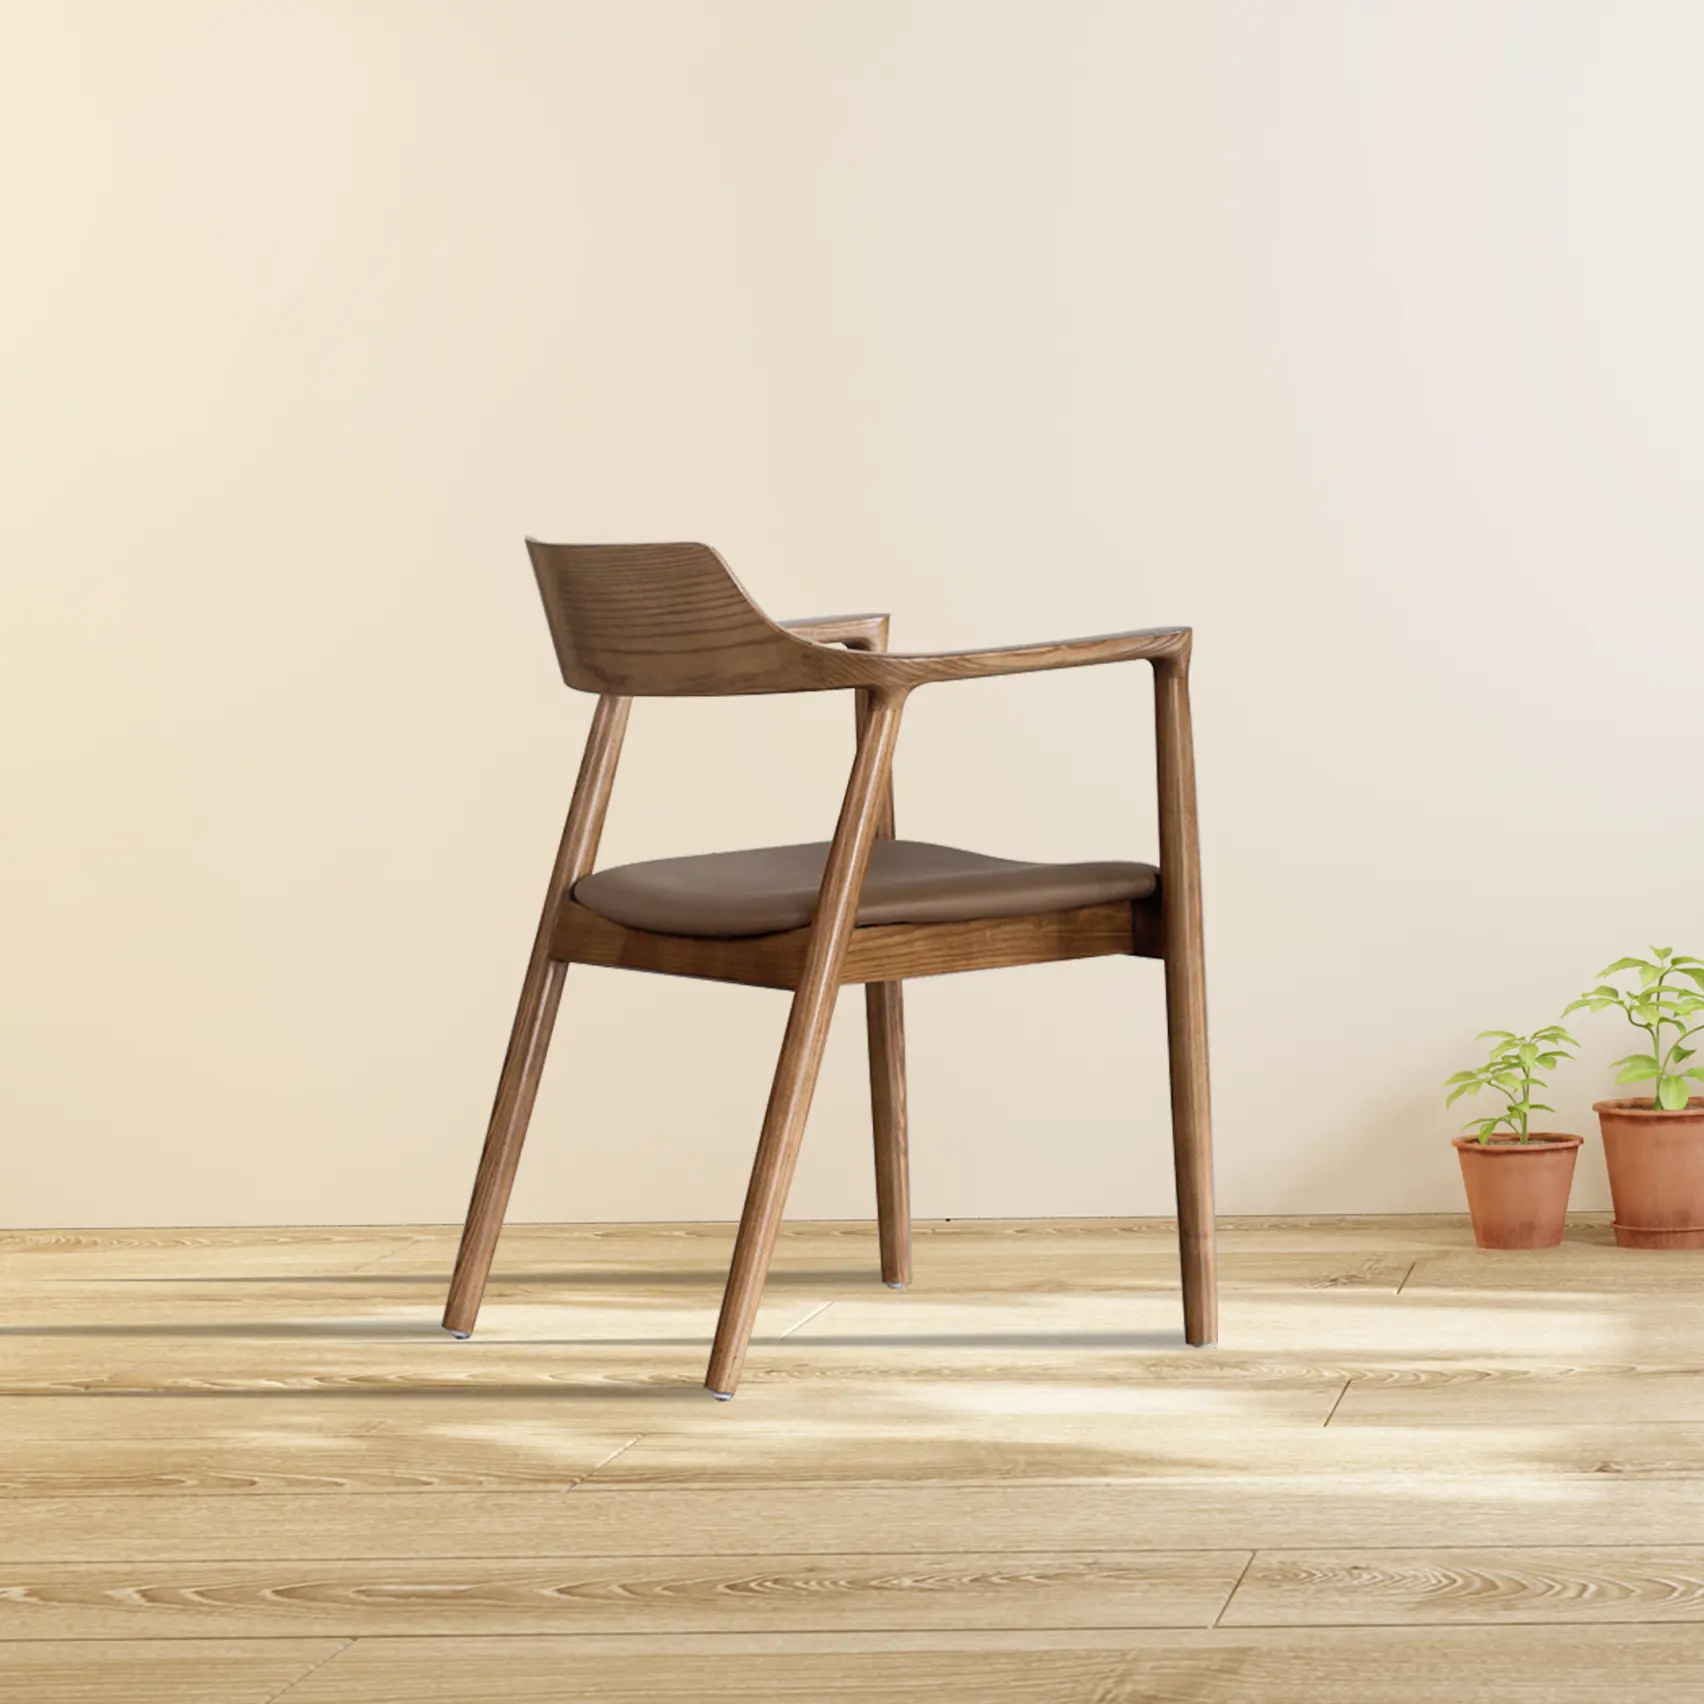 Vendita calda di alta qualità di Design in legno massello moderno semplice mobili sedia per il tempo libero camera da letto mobili Hotel sedia